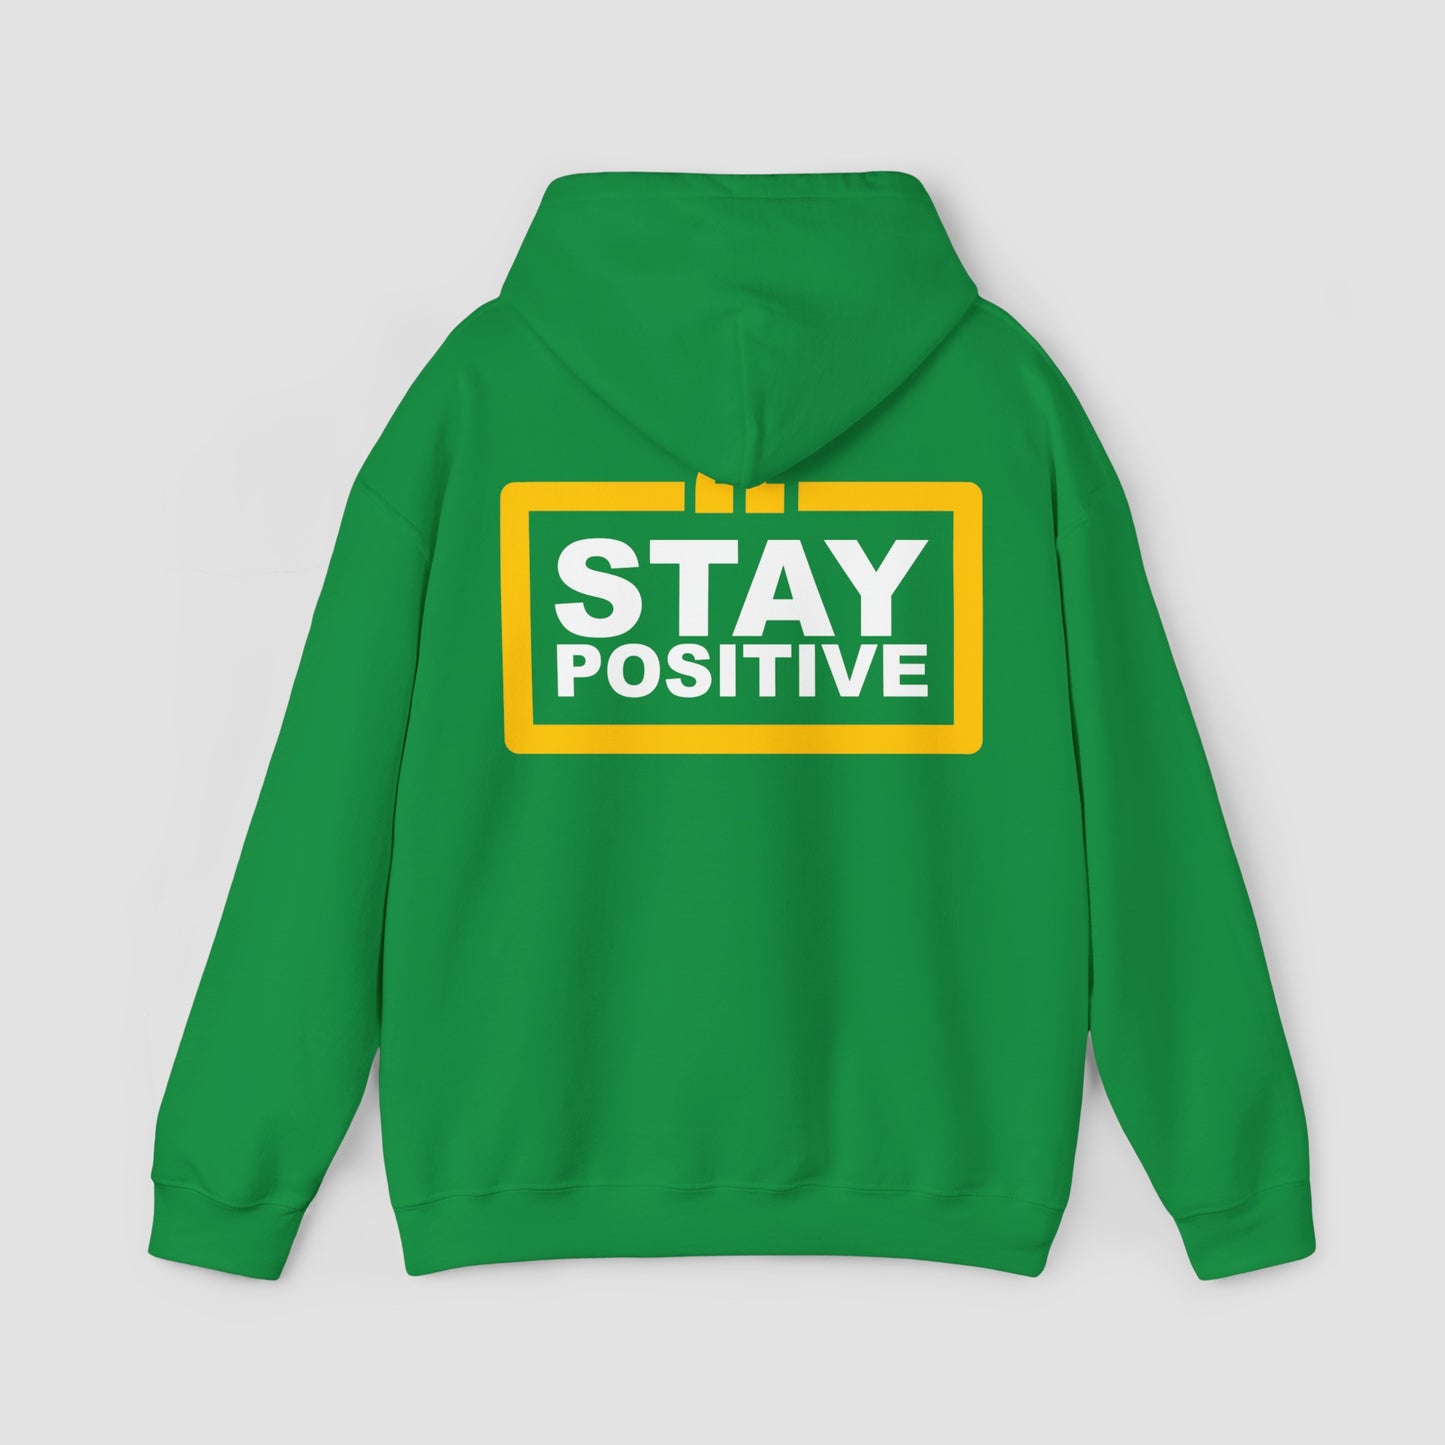 "Work Hard, Stay Humble" & "Stay Positive" Unisex Sweatshirt